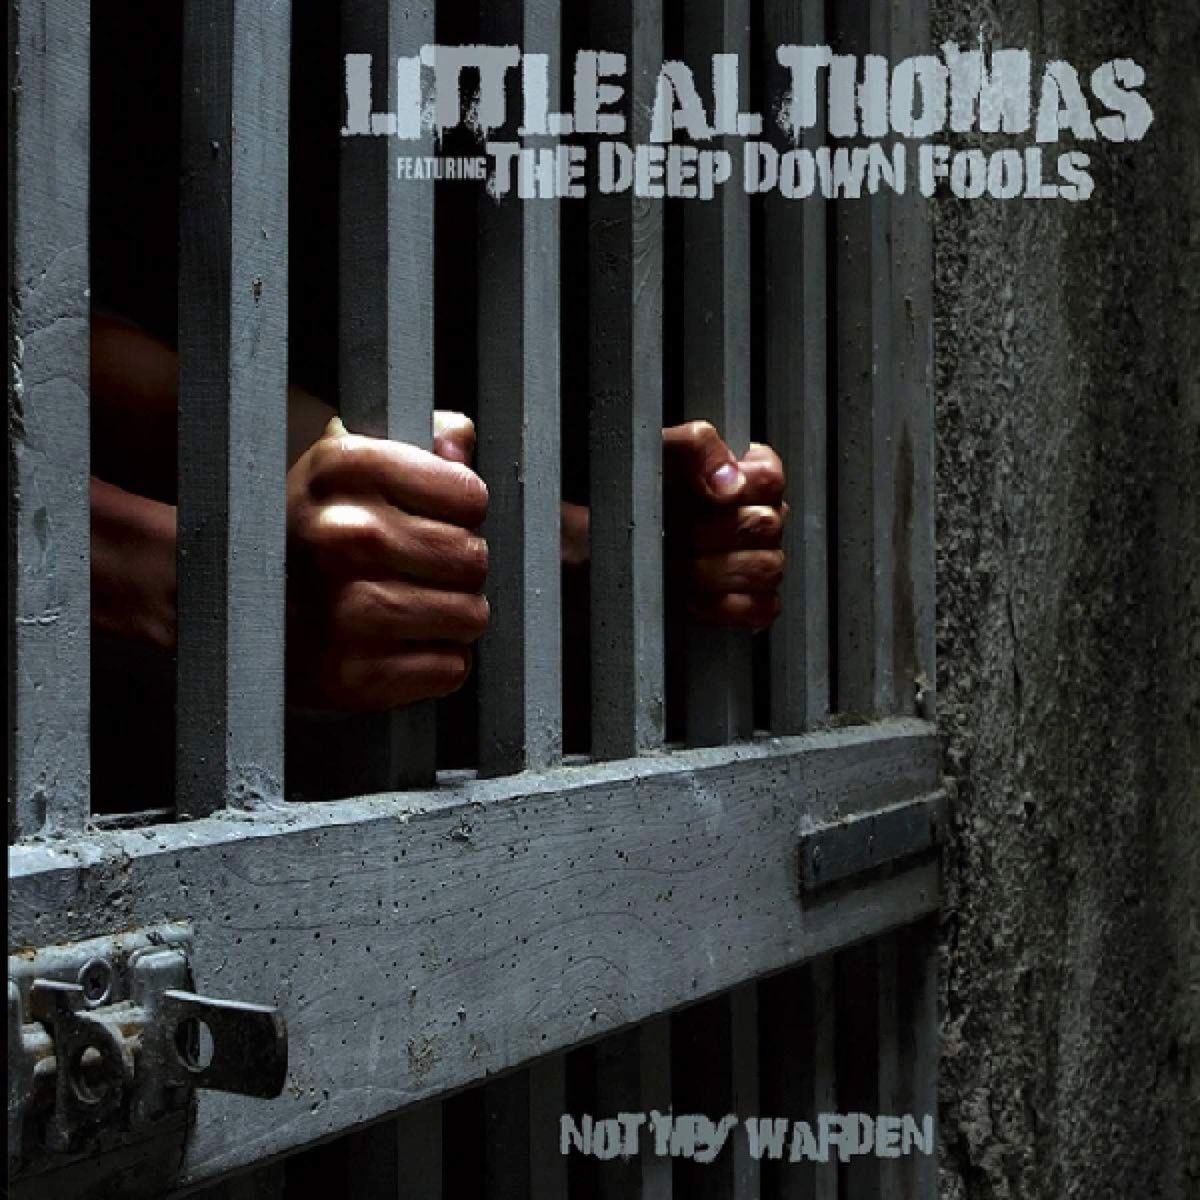 “Not My Warden” by Little Al Thomas.